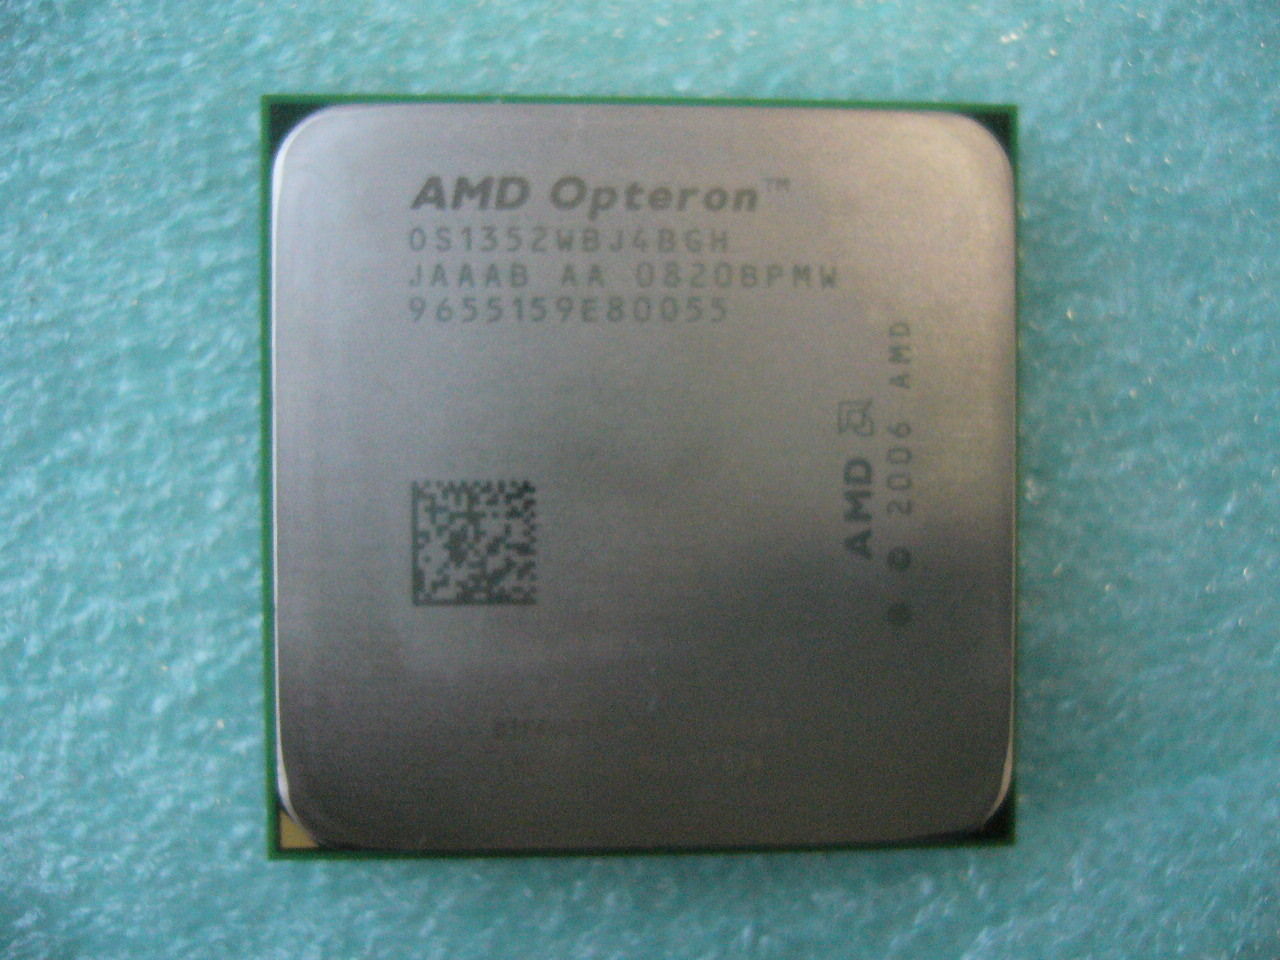 QTY 1x AMD Opteron CPU 2.1 GHz Quad-Core (OS1352WBJ4BGH) CPU AM2+ 940-Pin - zum Schließen ins Bild klicken